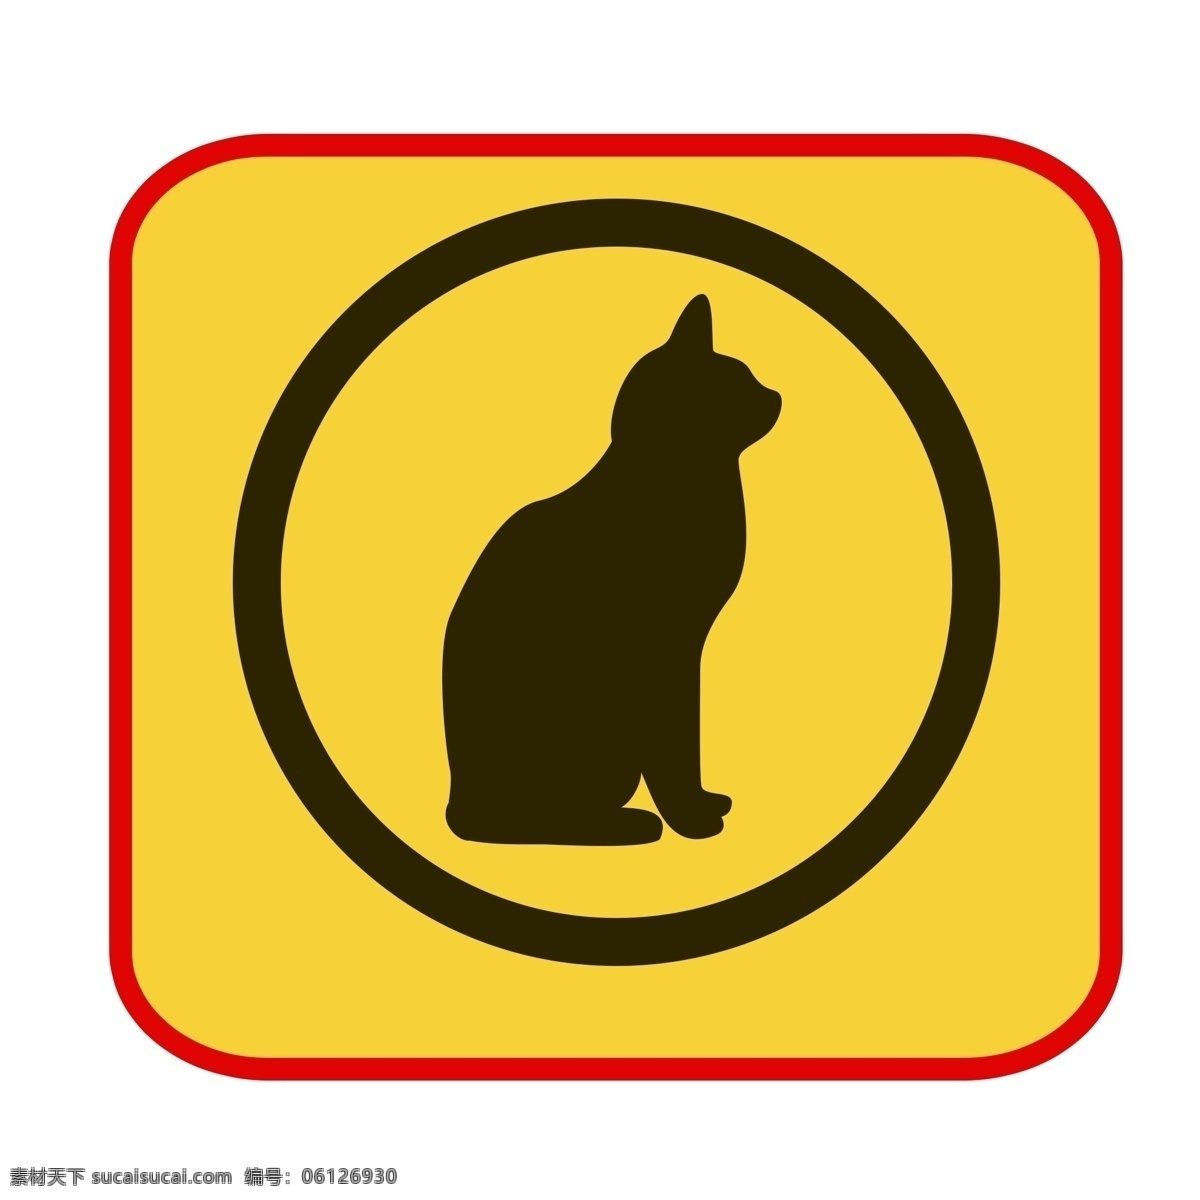 黄色 警示 禁止 标牌 禁止动物出没 温馨提示 白色圆点装饰 禁止停留 警示标识插画